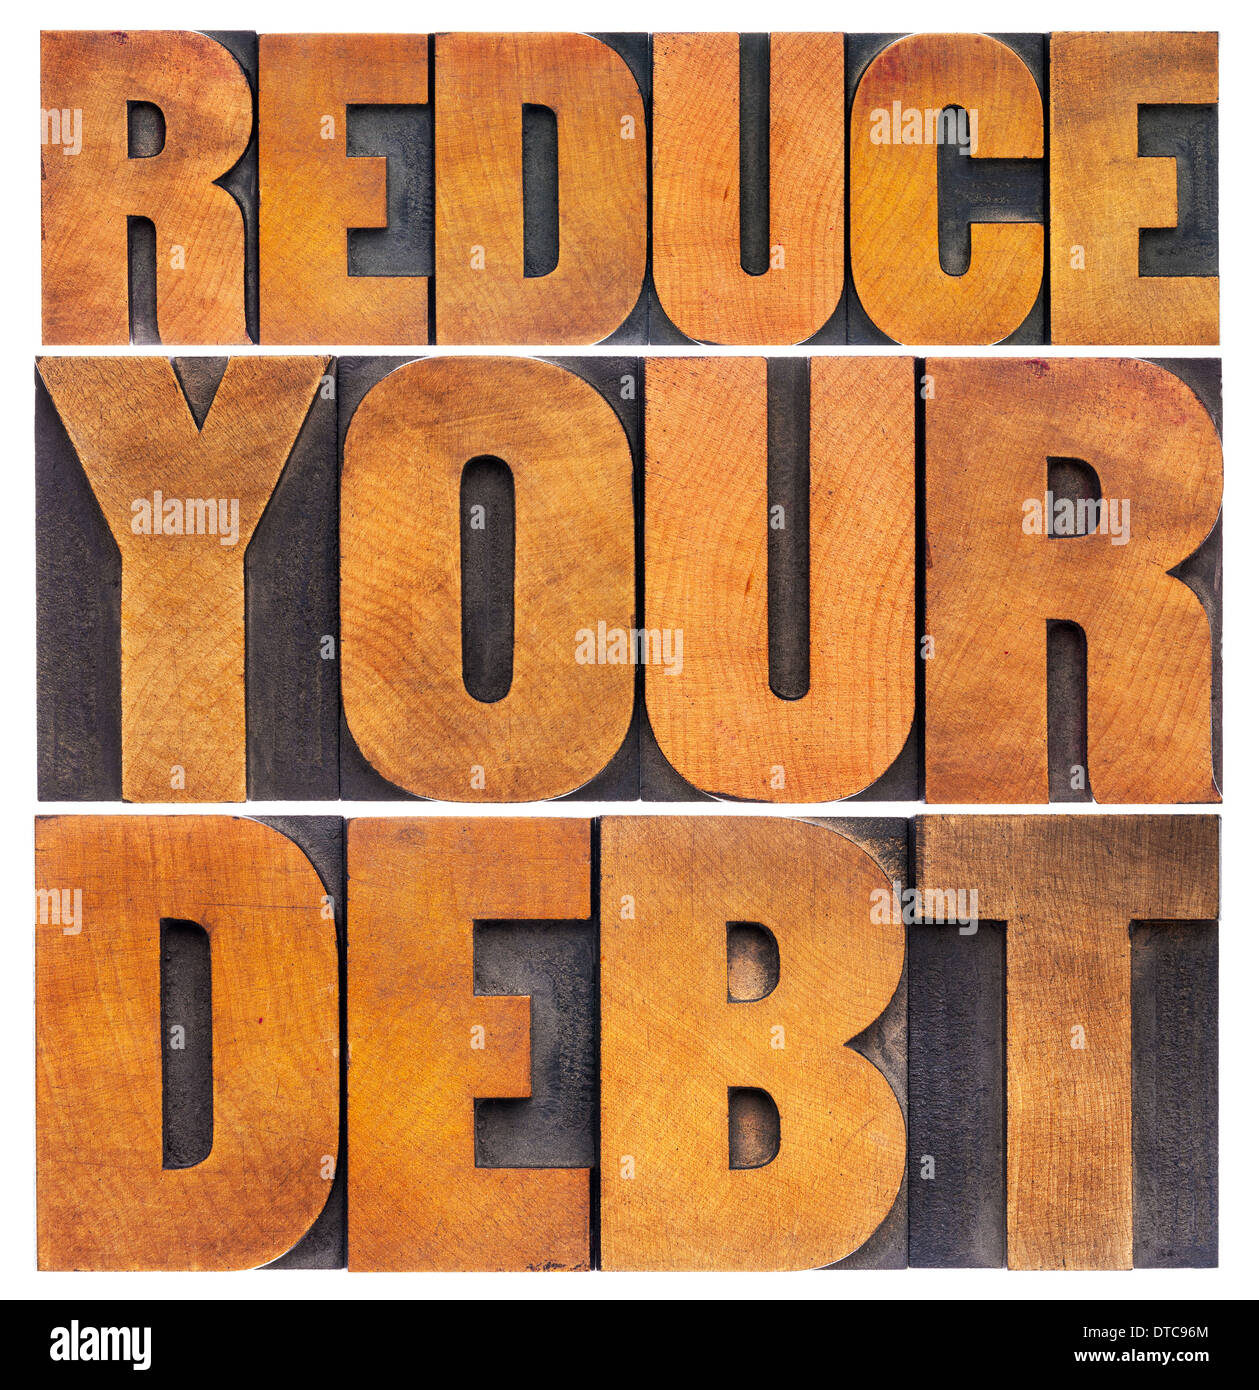 Ridurre il debito finanziario - Nozione - testo isolato in rilievografia vintage tipo legno Foto Stock